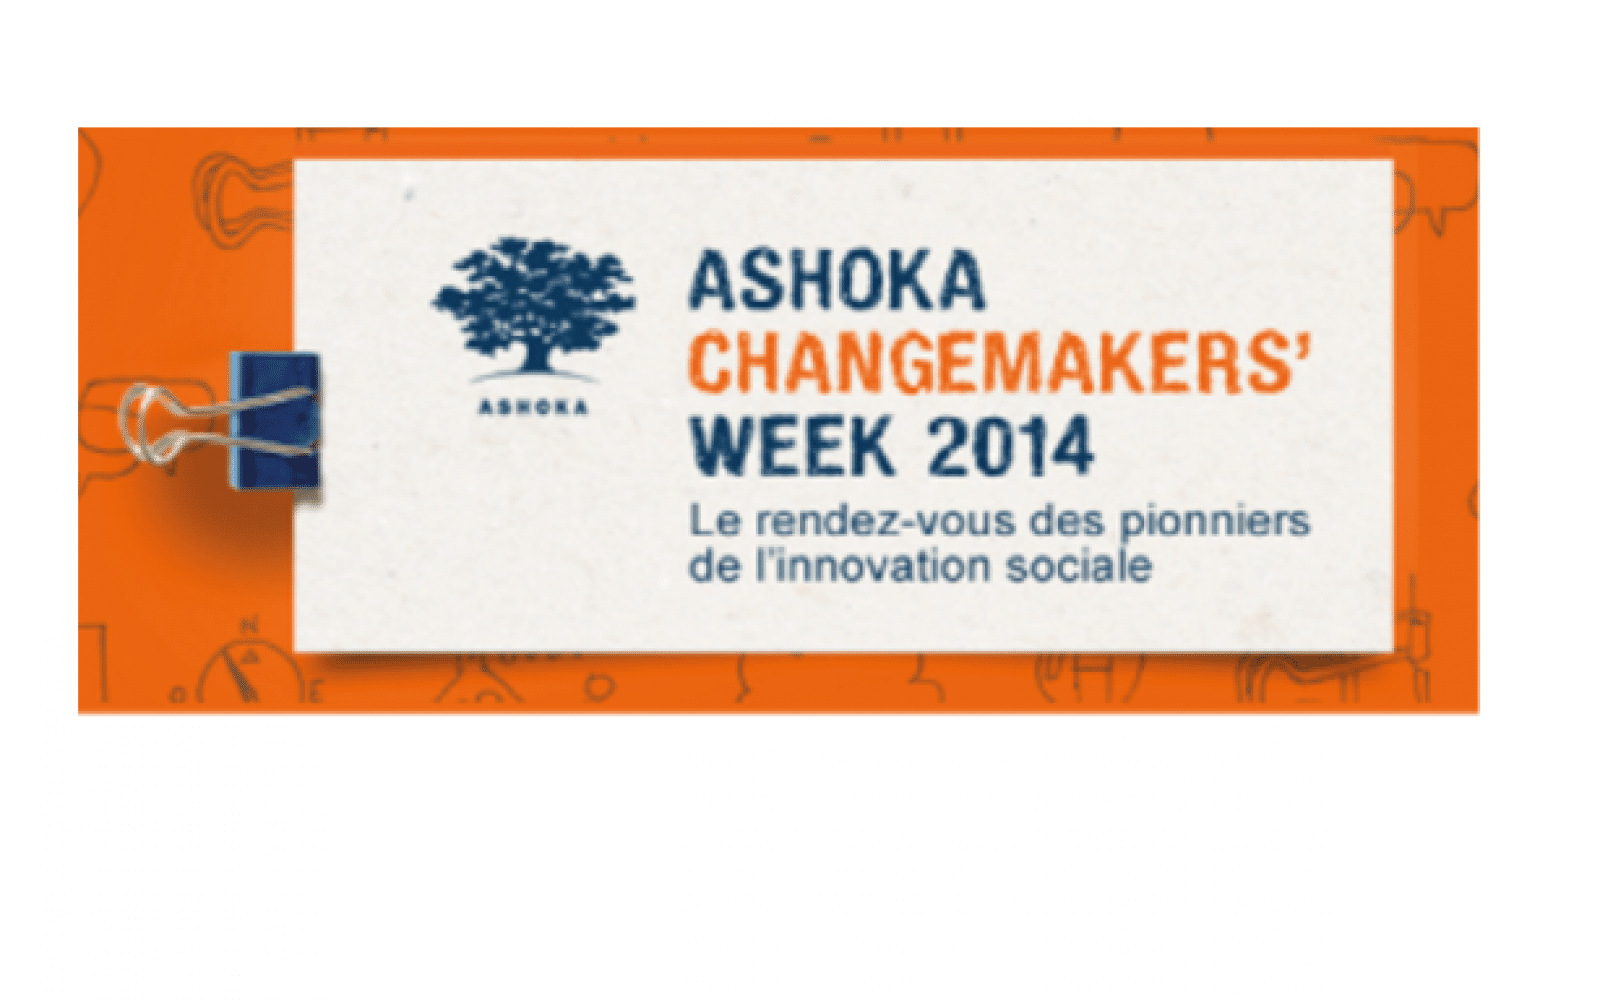 Changemakers' week 2014 - hero image 